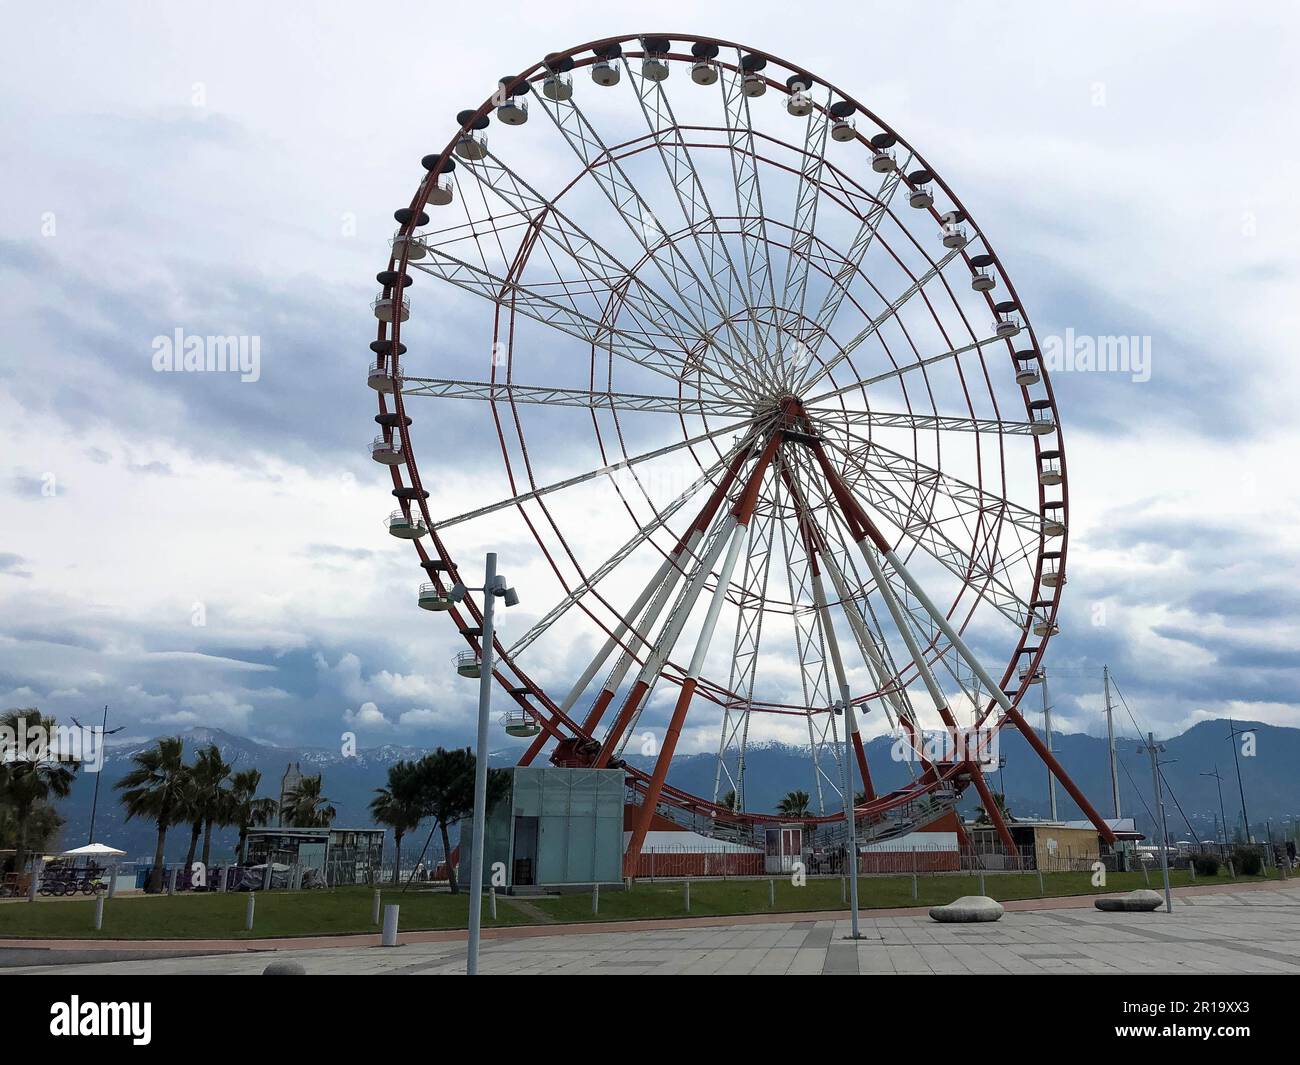 Ein großes rundes, wunderschönes Riesenrad, eine Panoramaplattform in einem Park in einem tropischen, warmen Sommerresort mit Palmen vor blauem Himmel. Stockfoto